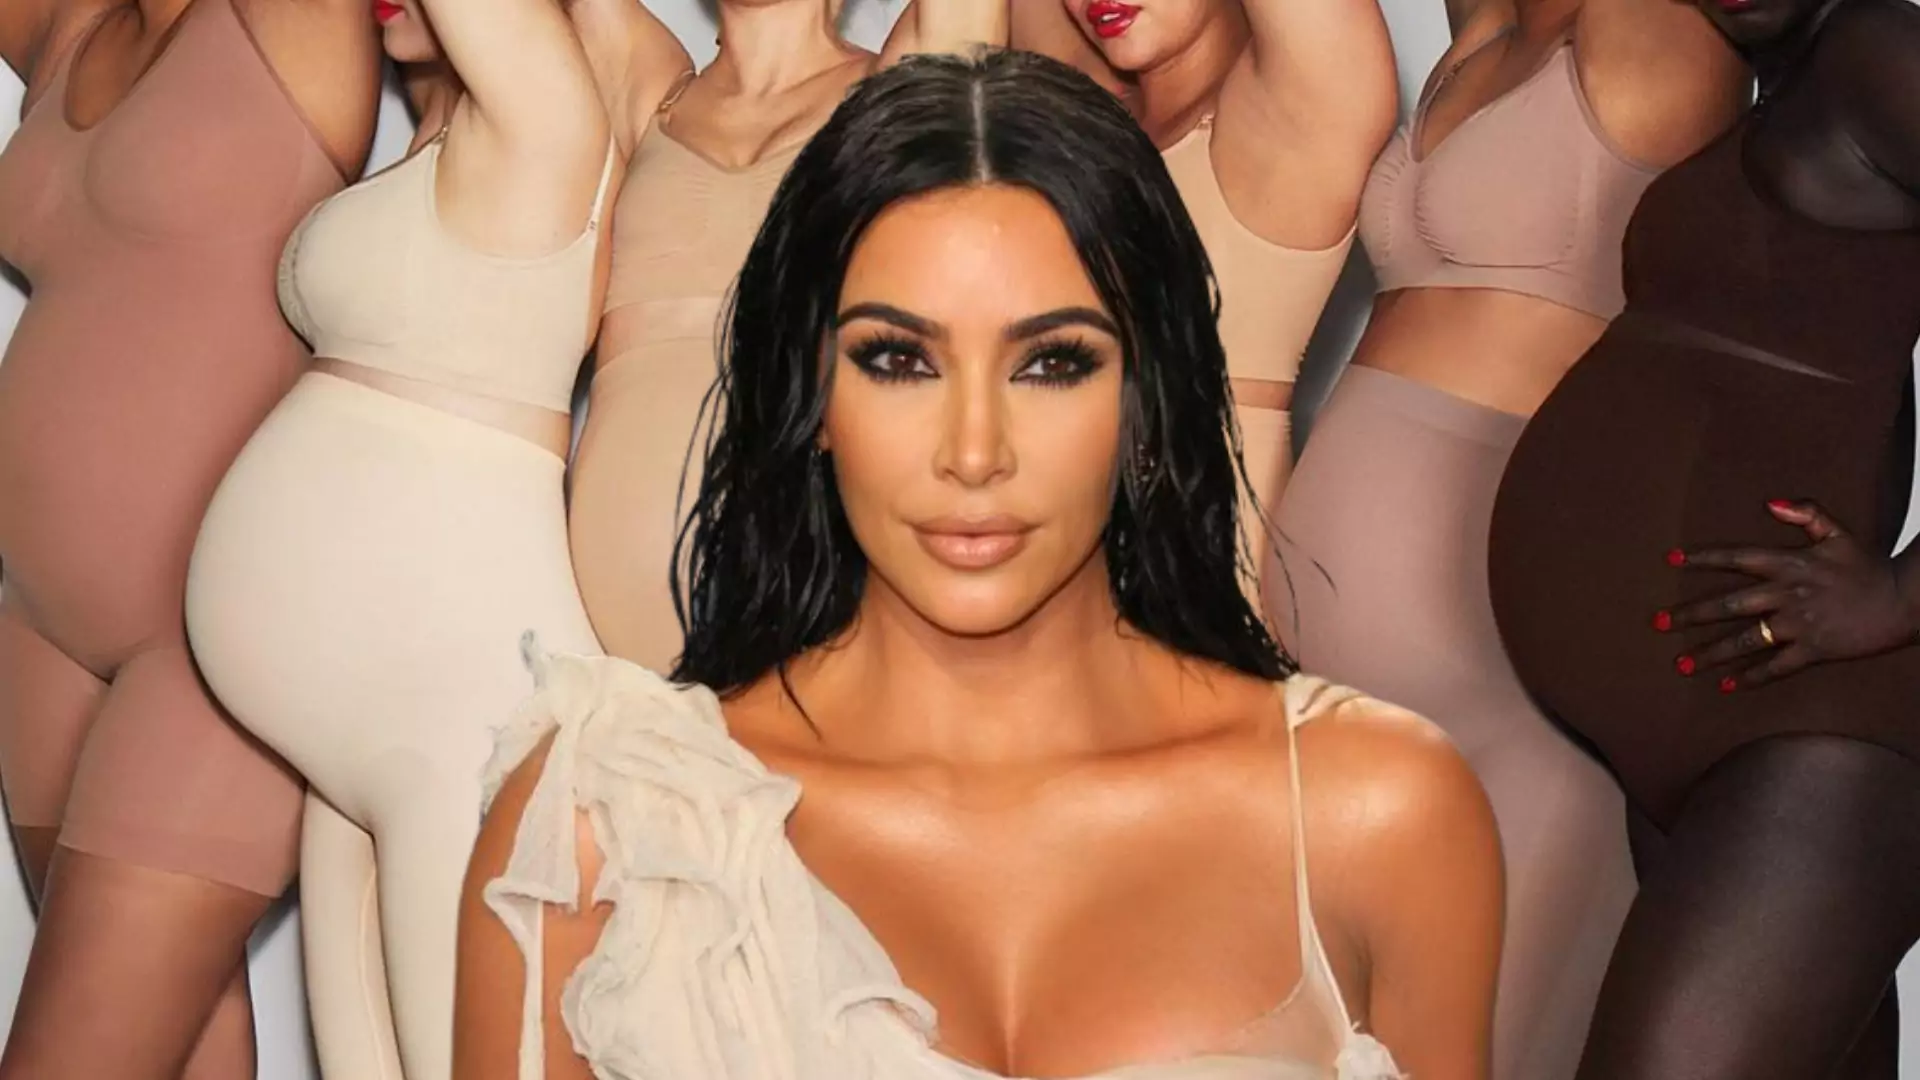 Kim Kardashian skrytykowana za kolekcję dla ciężarnych. "Jeśli nie byłaś w ciąży, to nie wiesz, że..."